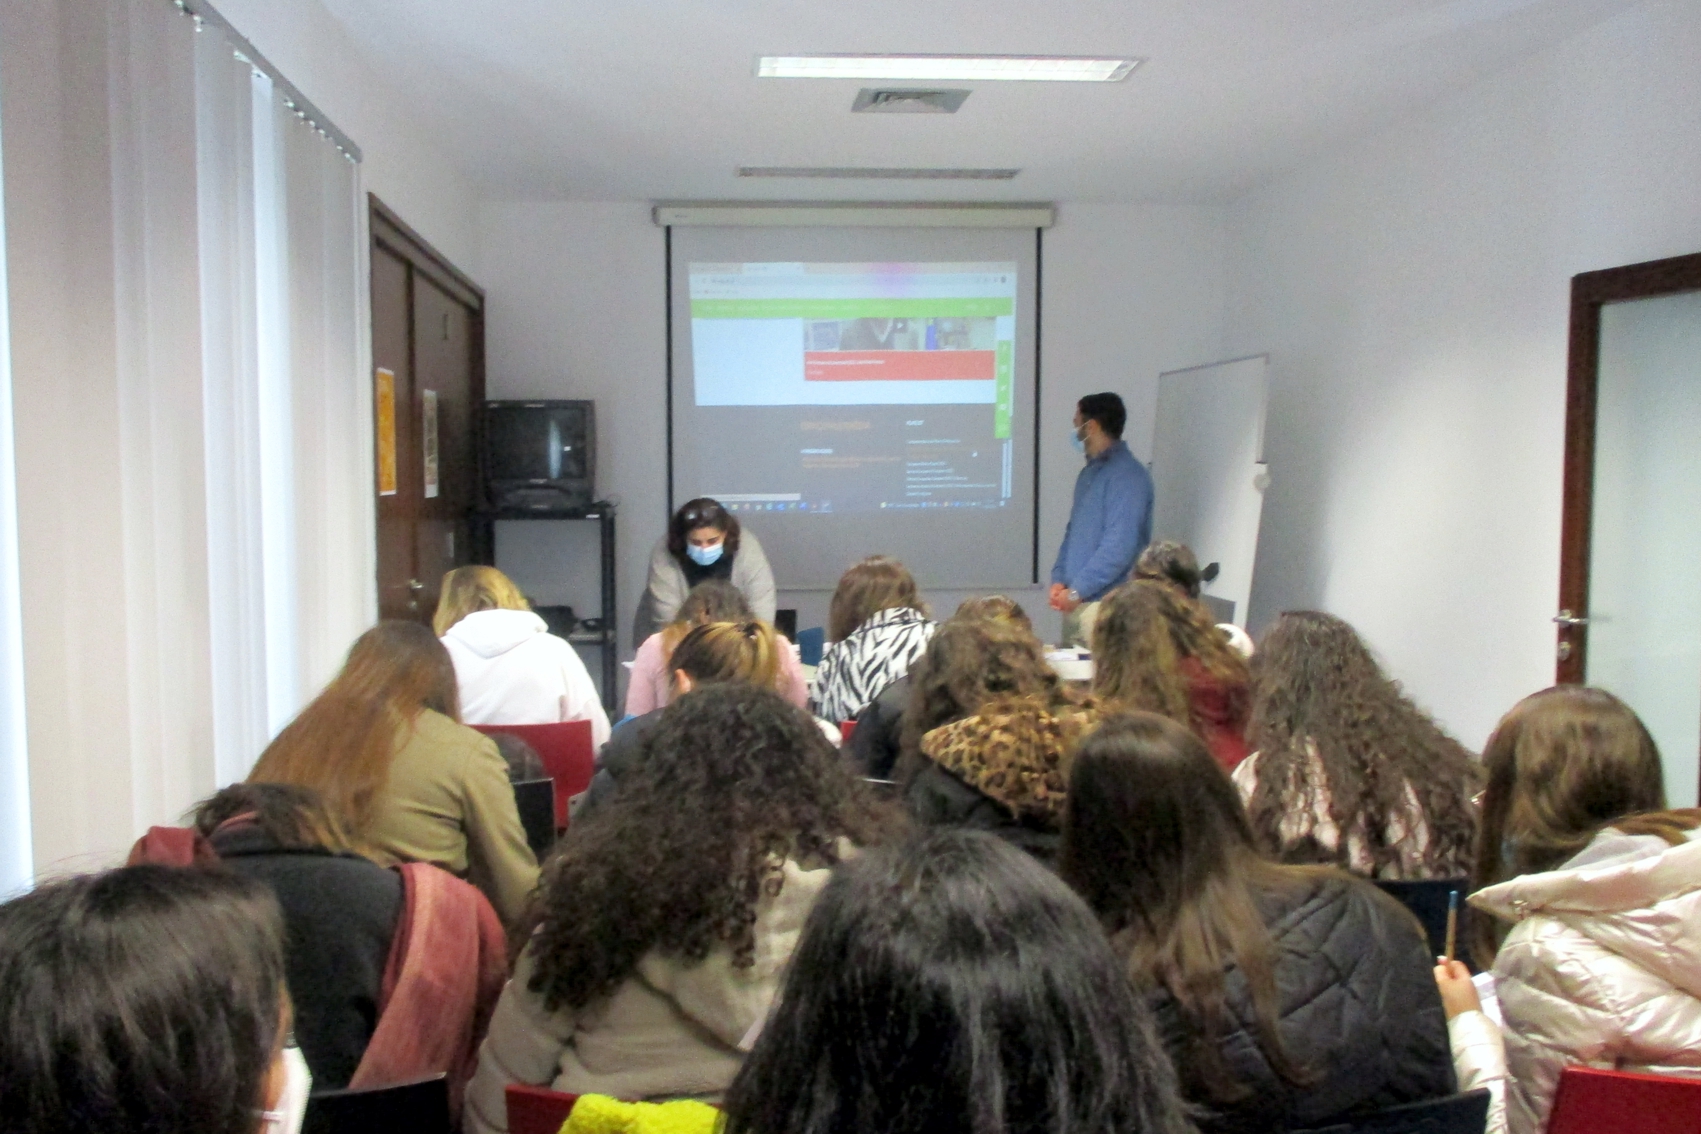 Técnica do IPDJ de Évora, Voluntário das sessões Internet Segura, alunas e professoras da Escola Profissional da Região Alentejo.